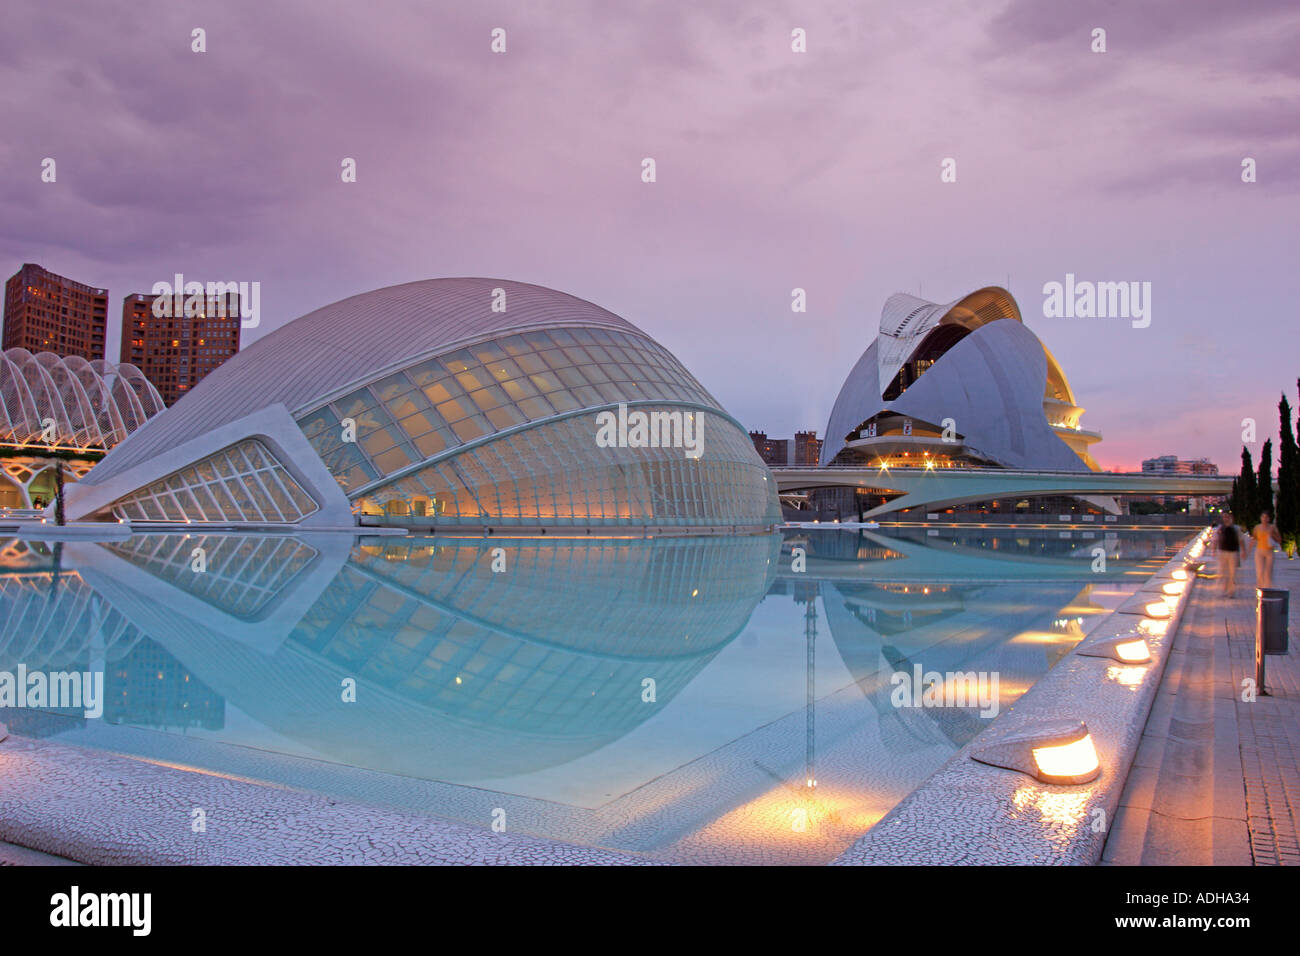 Spain Valencia City of sciences and arts by architect Santiago Calatrava twilight  Stock Photo